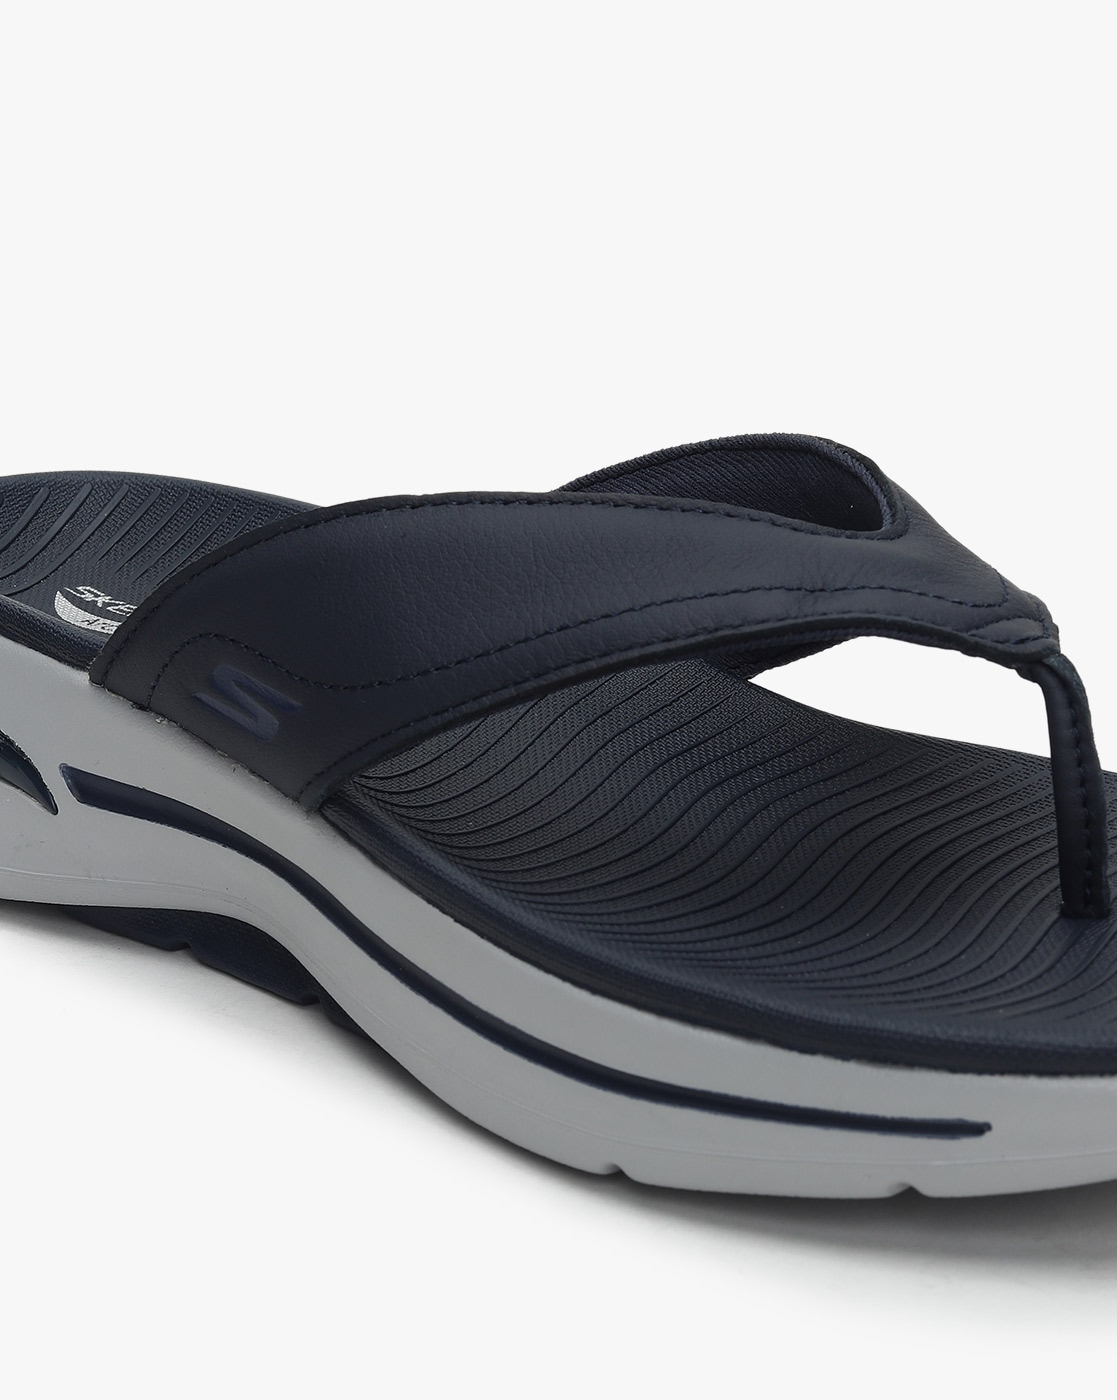 Skechers men go walk sandals size 11, Men's Fashion, Footwear, Sneakers on  Carousell